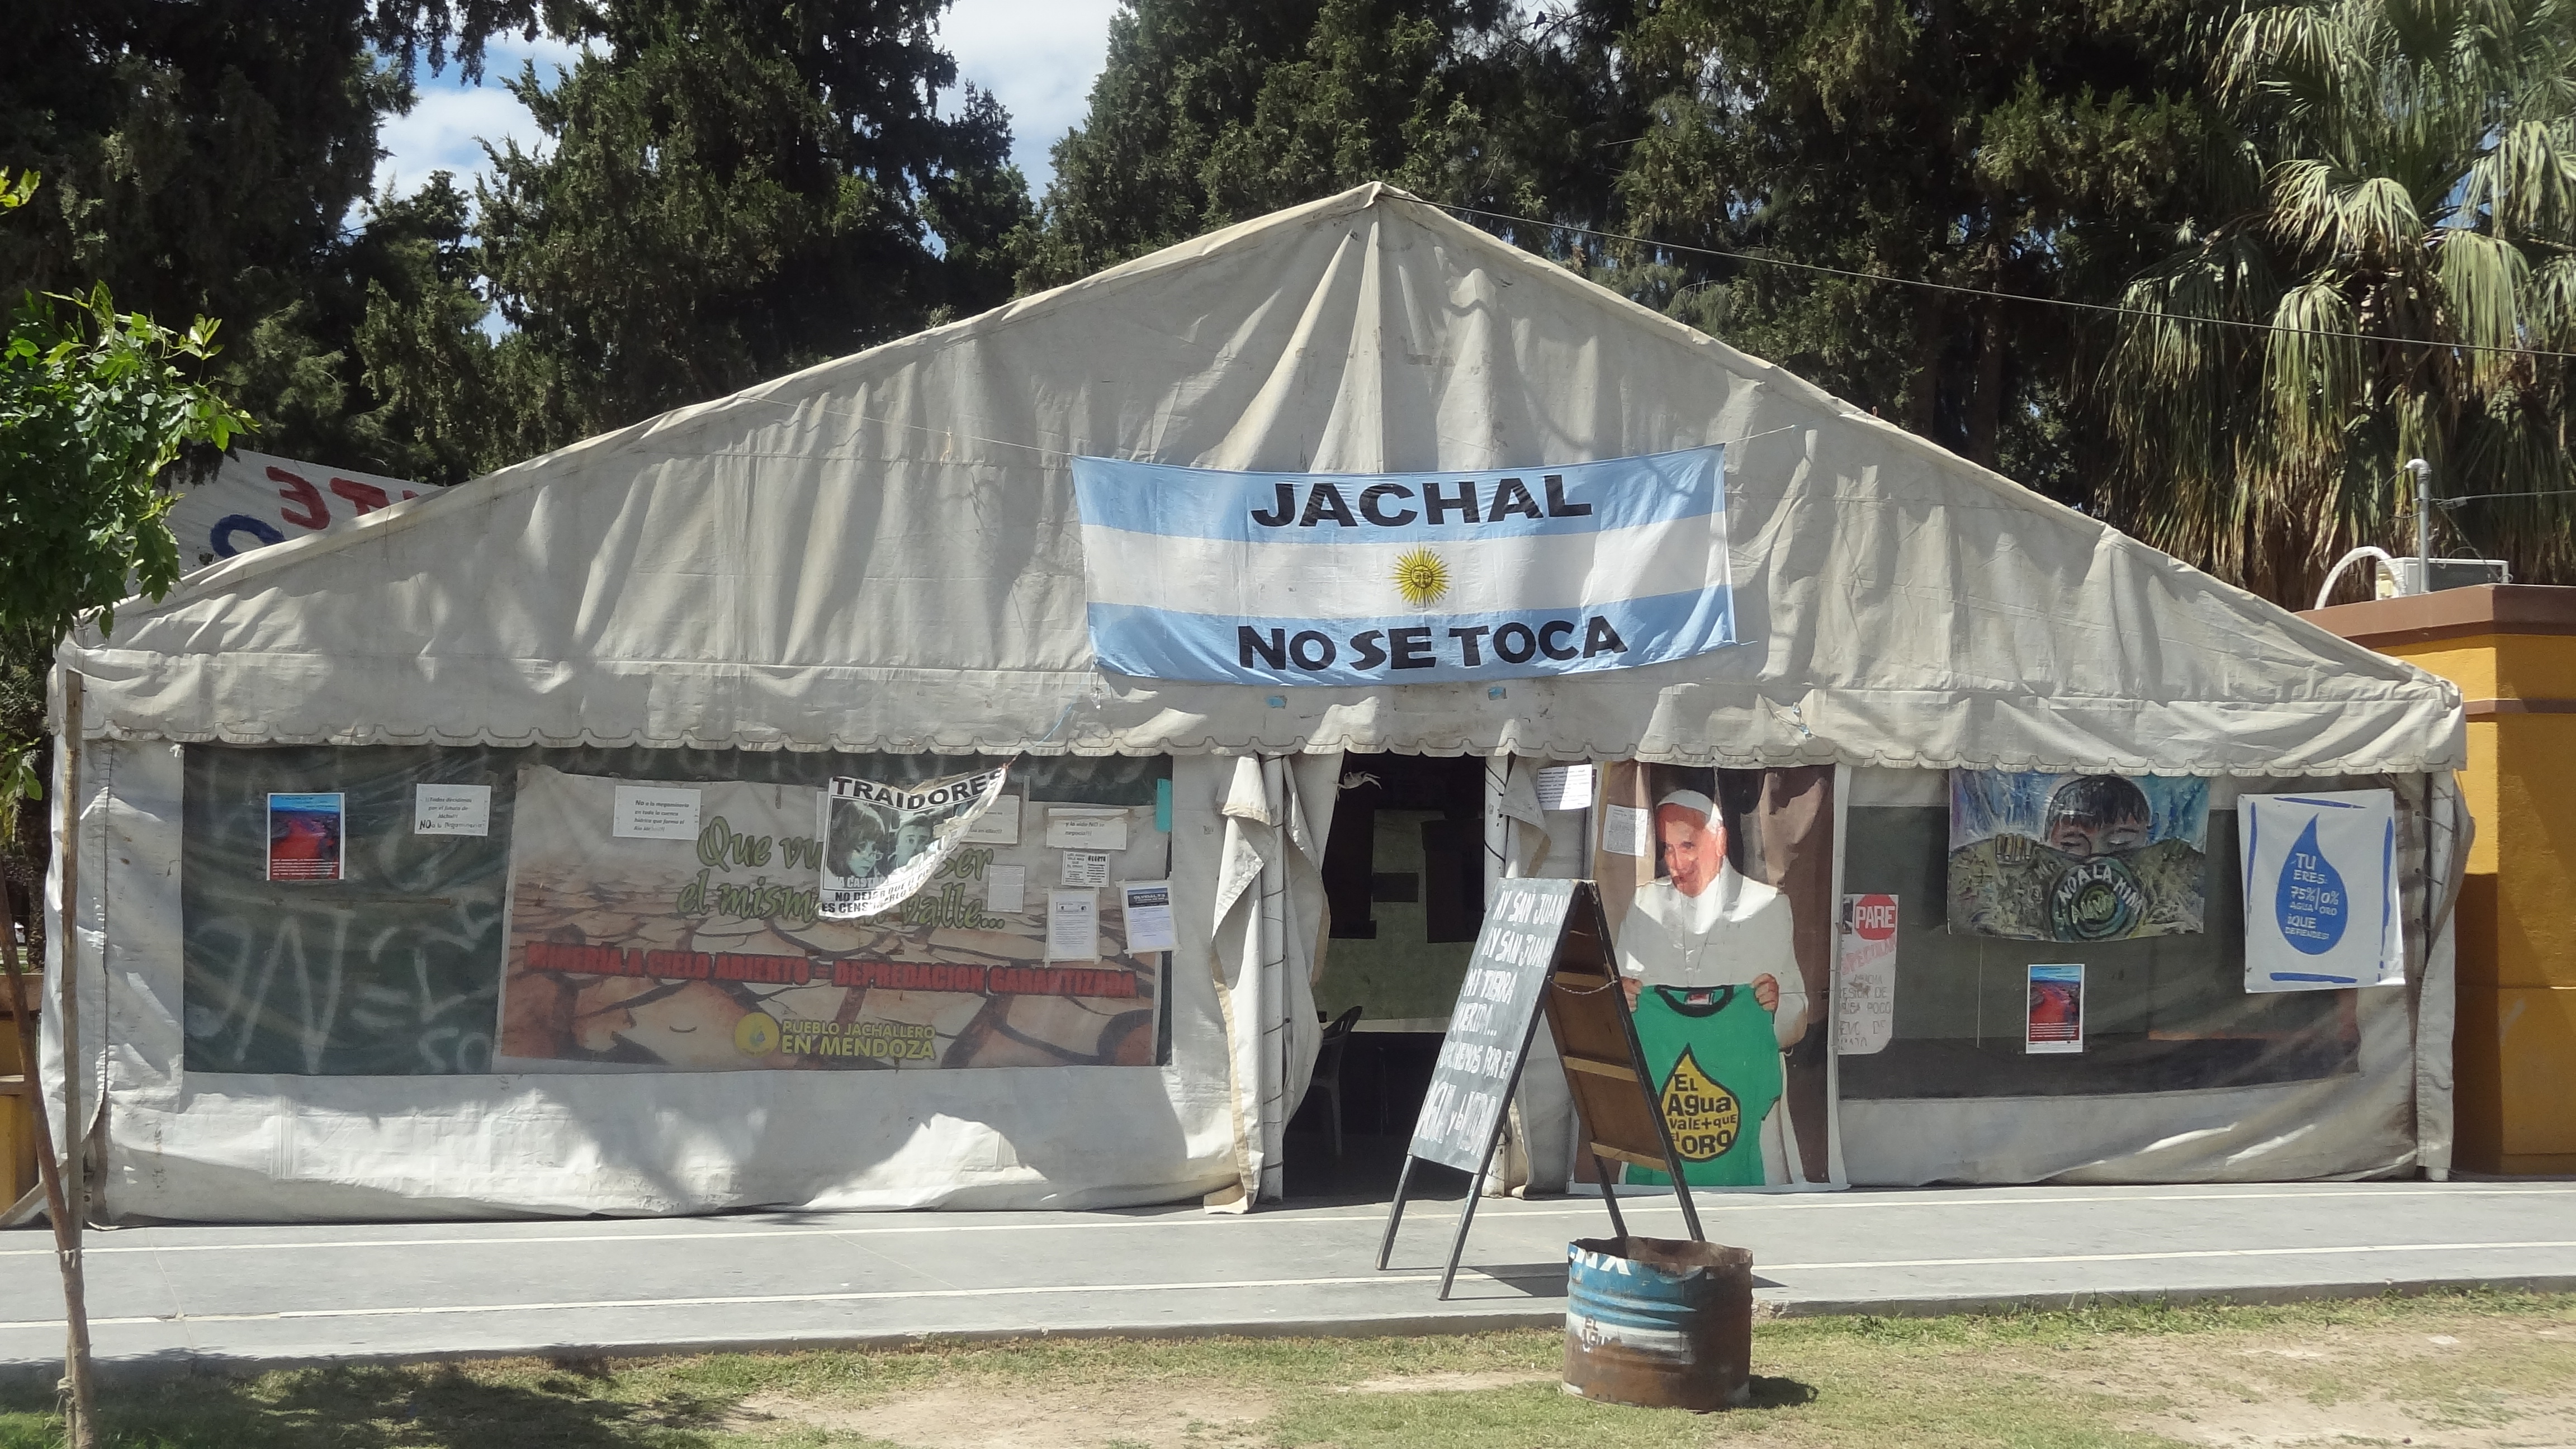 The camp at Jáchal, Argentina: ‘Hands off Jachal’. © Tom Gatehouse 2016